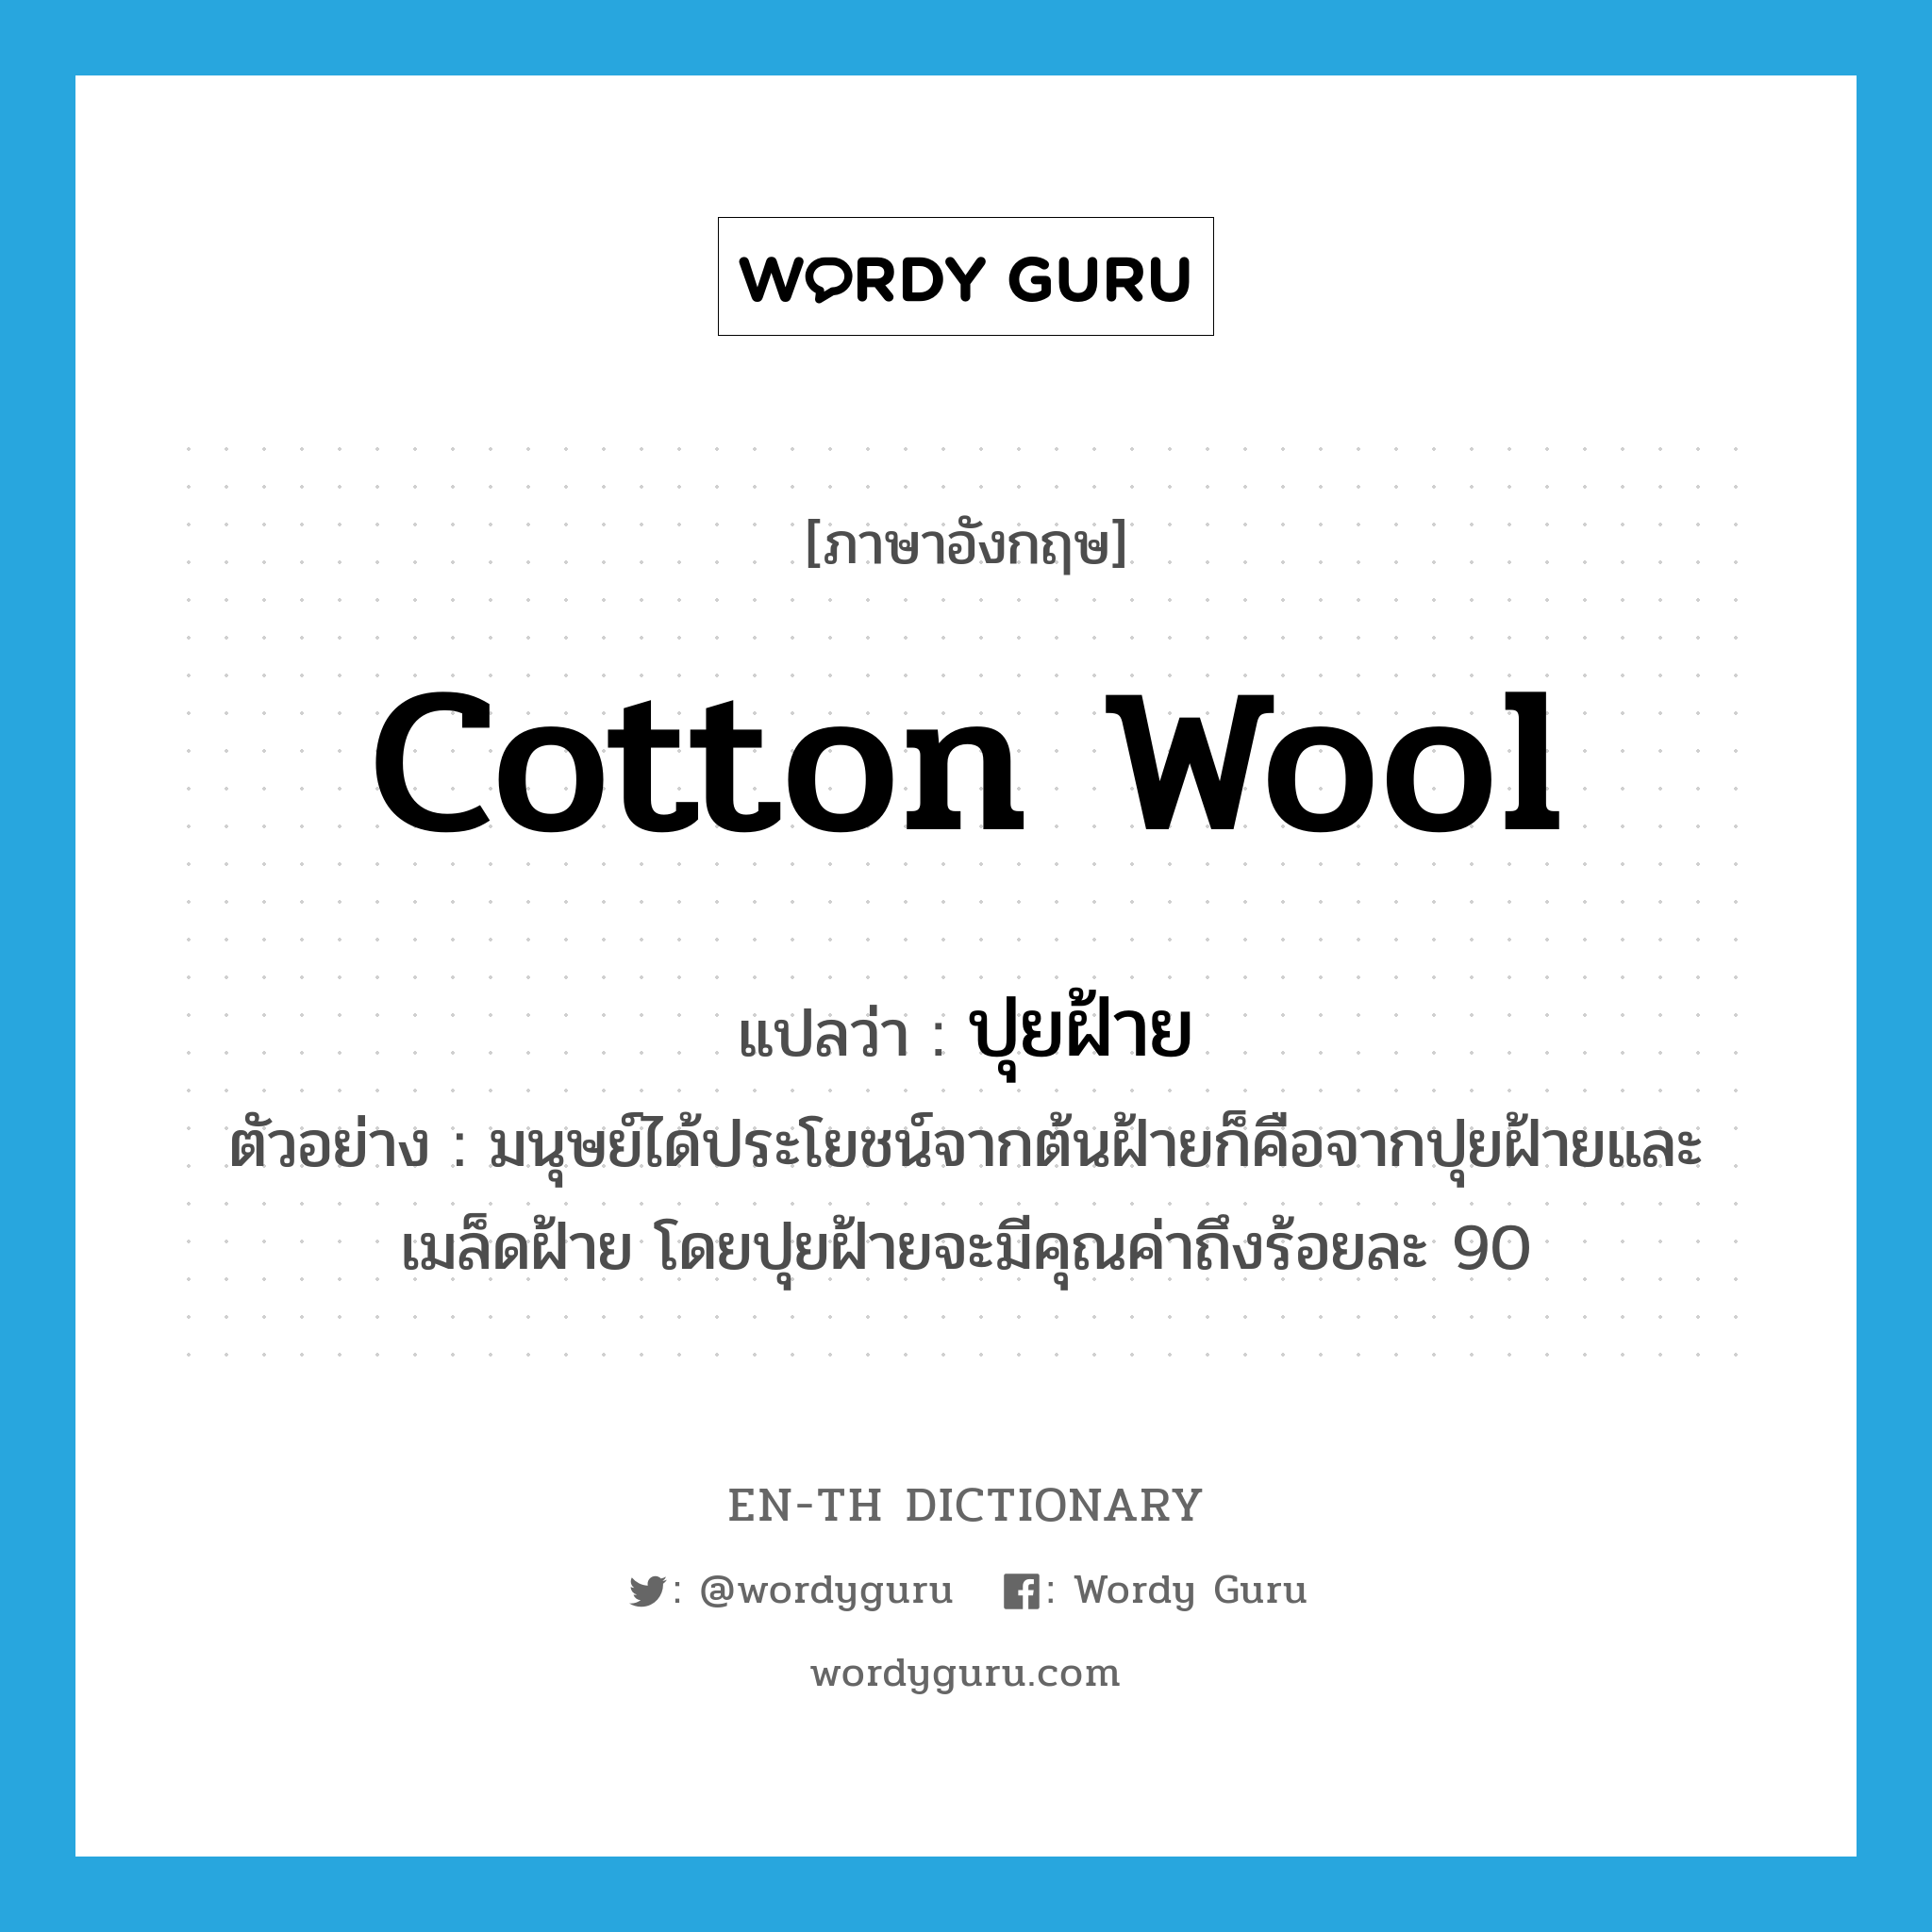 ปุยฝ้าย ภาษาอังกฤษ?, คำศัพท์ภาษาอังกฤษ ปุยฝ้าย แปลว่า cotton wool ประเภท N ตัวอย่าง มนุษย์ได้ประโยชน์จากต้นฝ้ายก็คือจากปุยฝ้ายและเมล็ดฝ้าย โดยปุยฝ้ายจะมีคุณค่าถึงร้อยละ 90 หมวด N